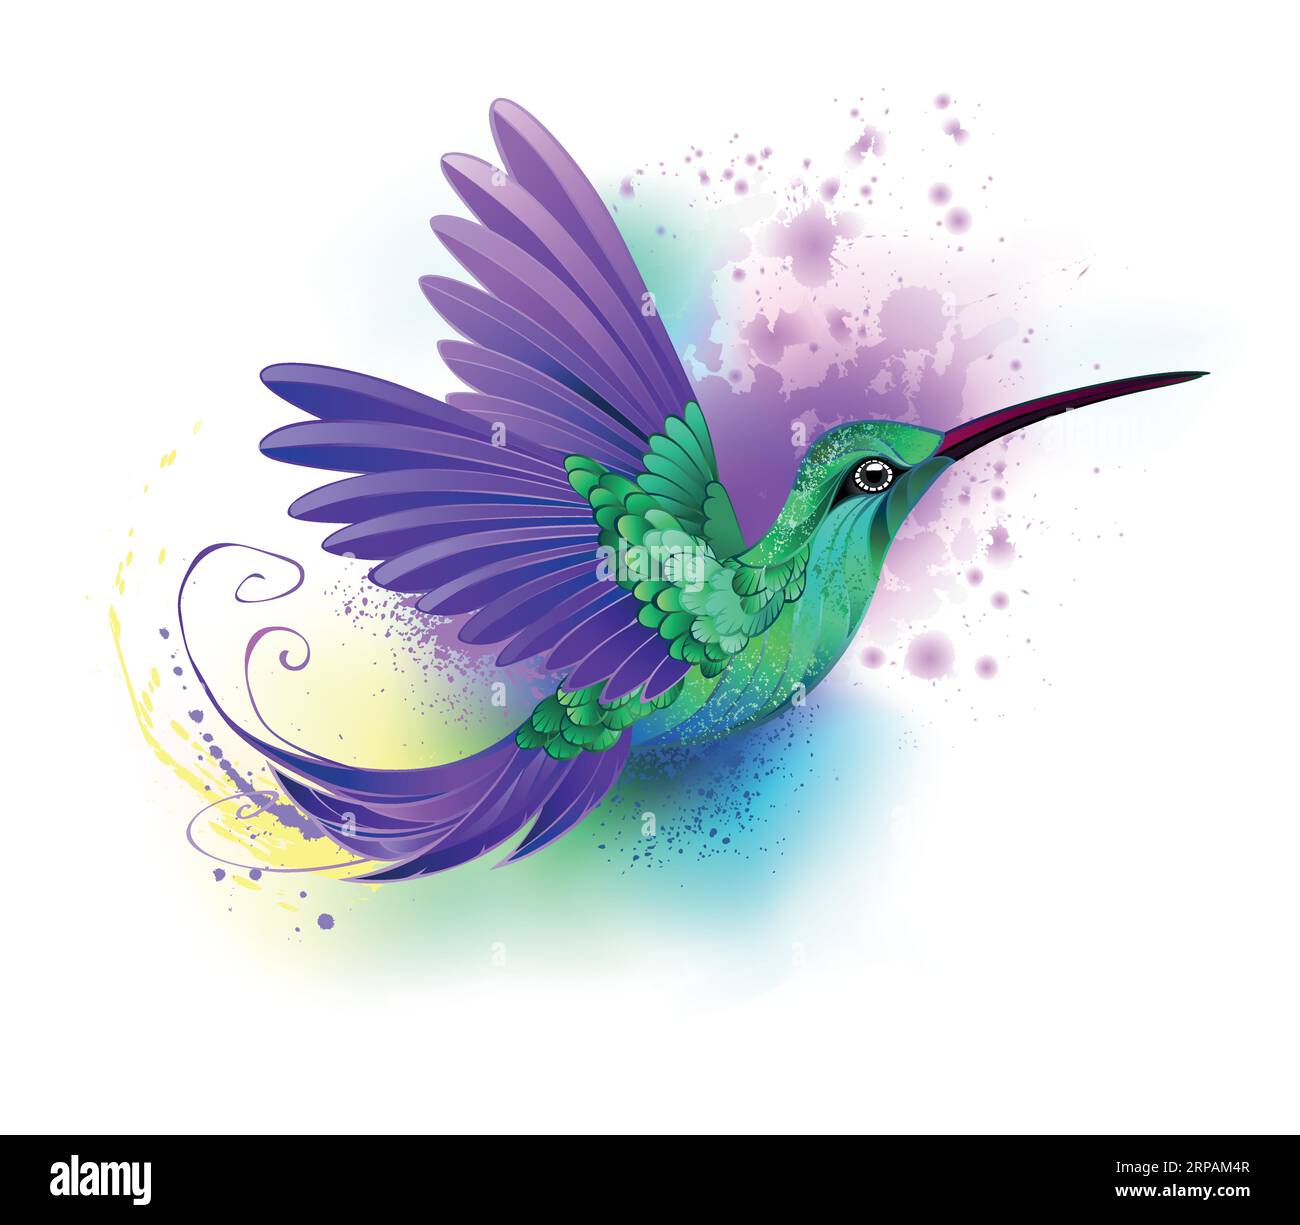 Künstlerisch gezeichneter, grüner Kolibri mit violetten Flügeln und strukturiertem, schillerndem Gefieder auf weißem Hintergrund mit Wasserfarben. Stock Vektor